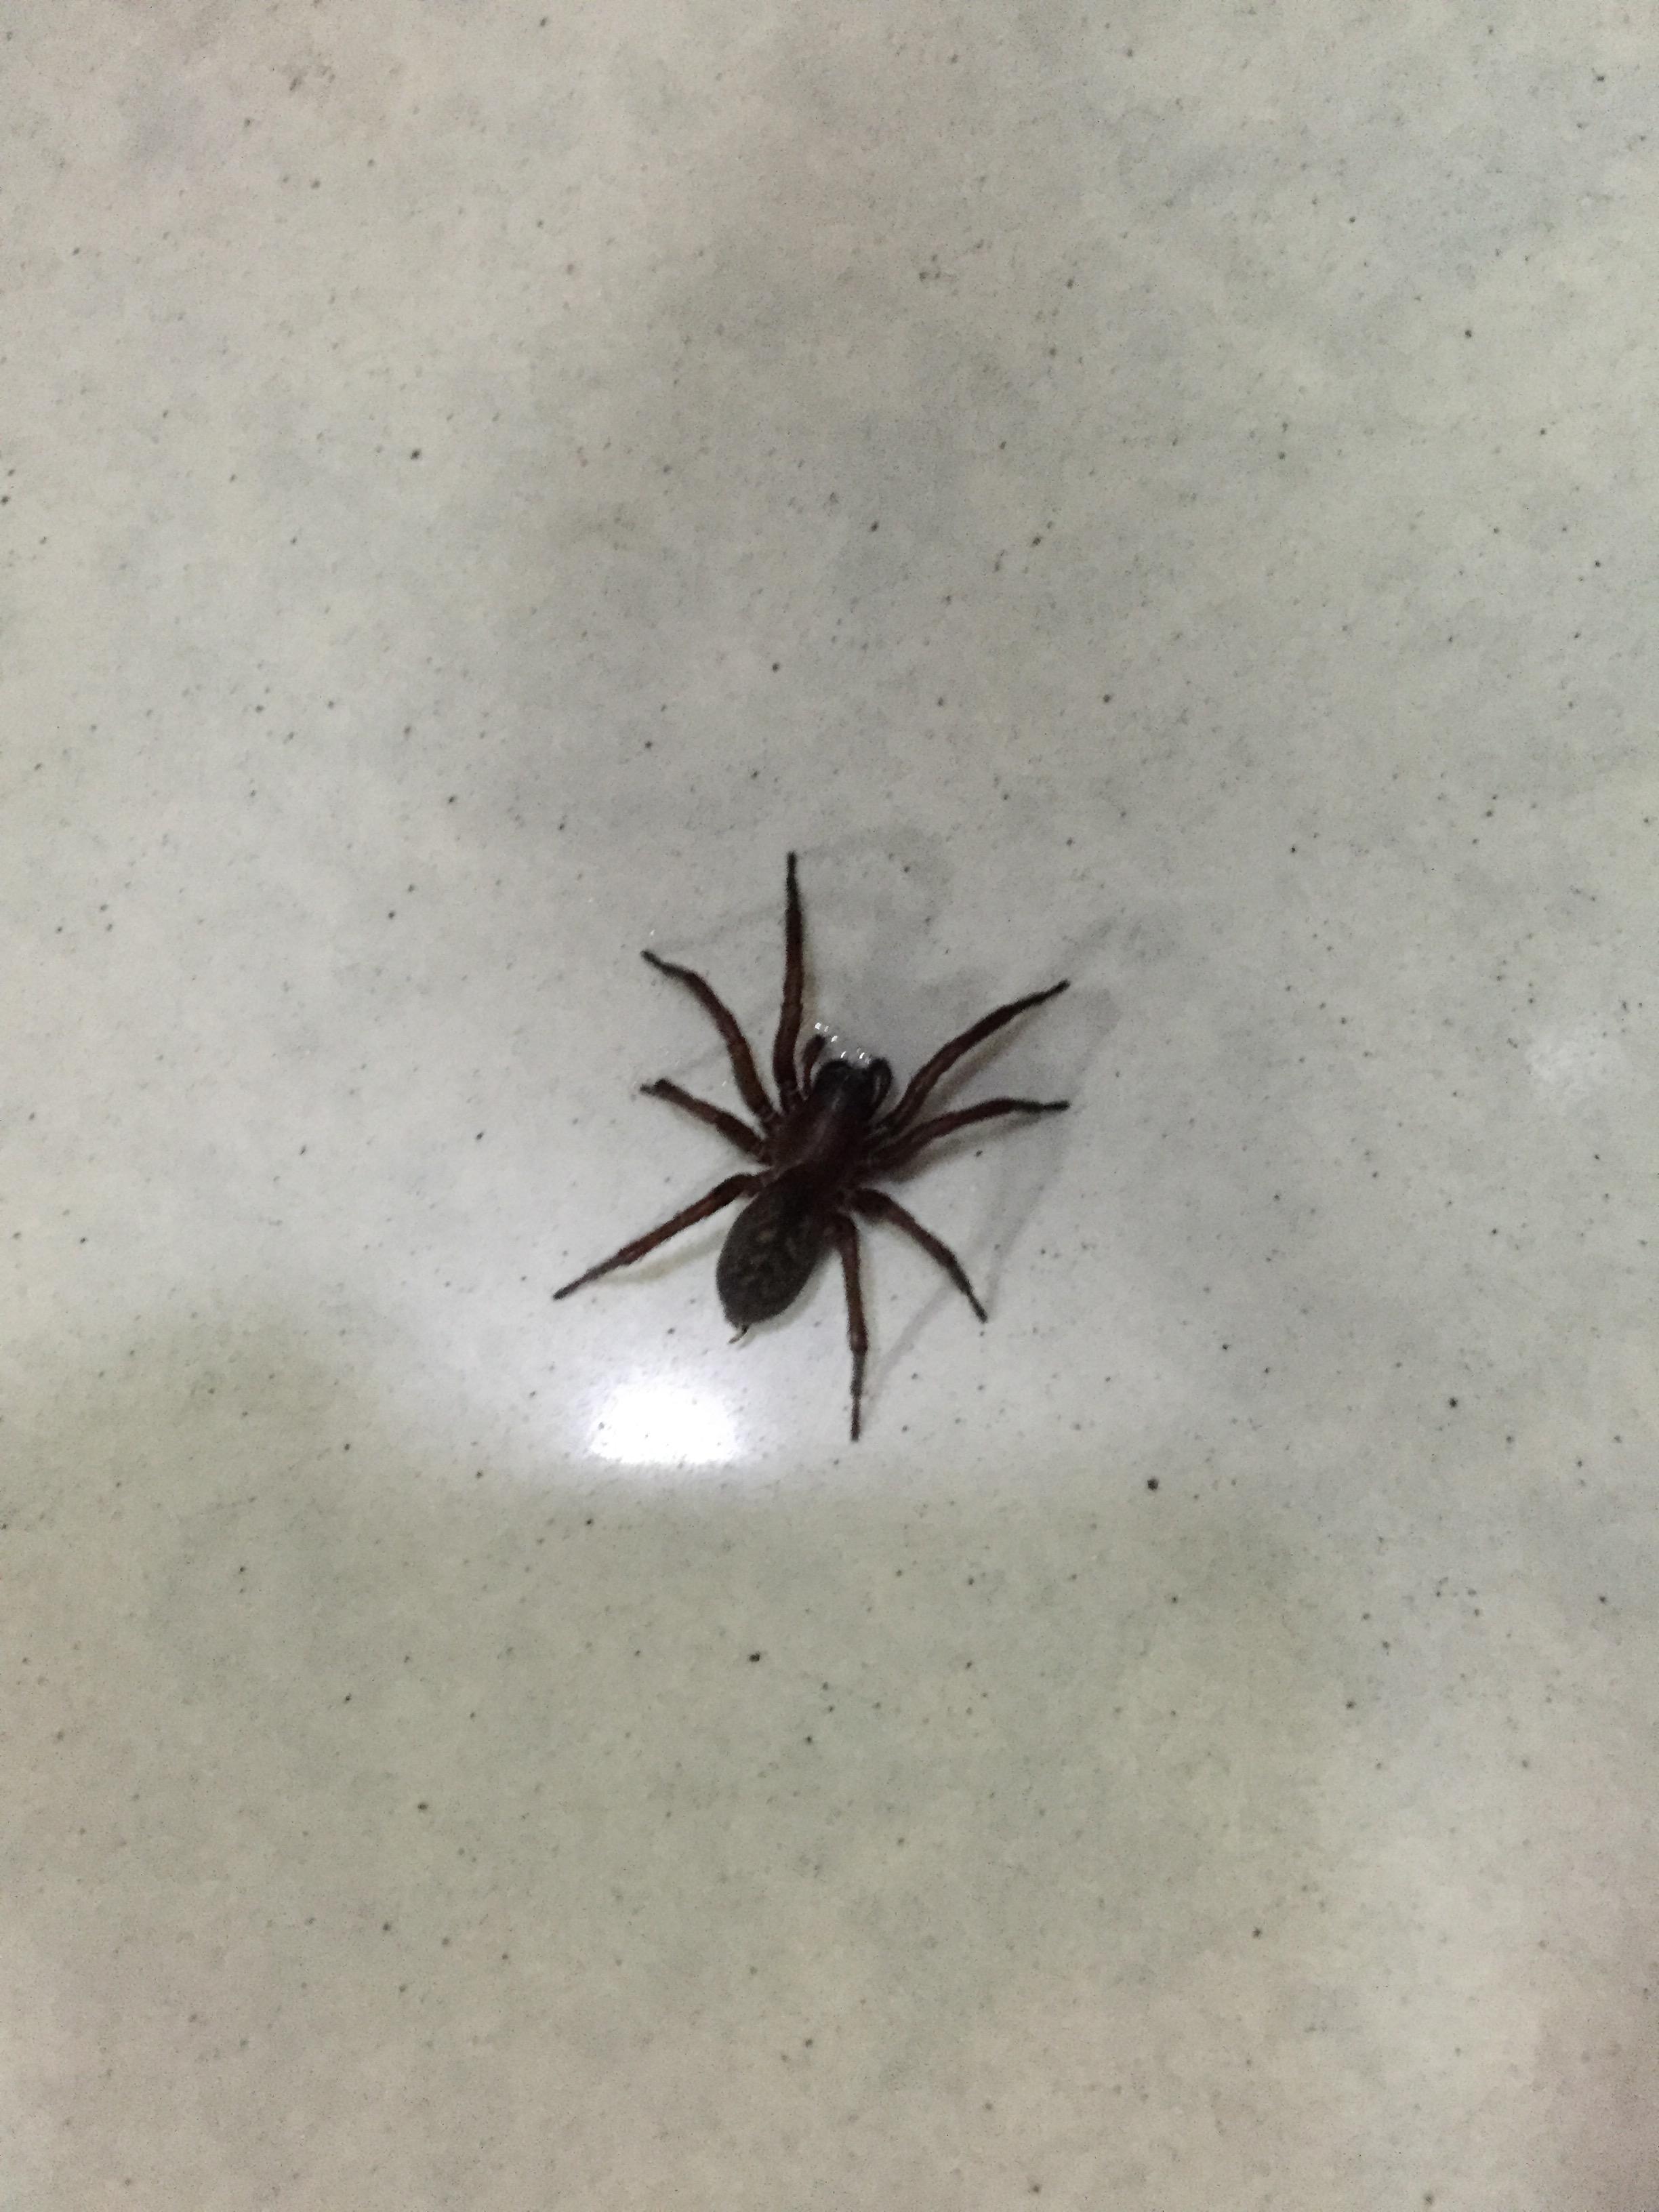 这是什么蜘蛛?有毒吗?